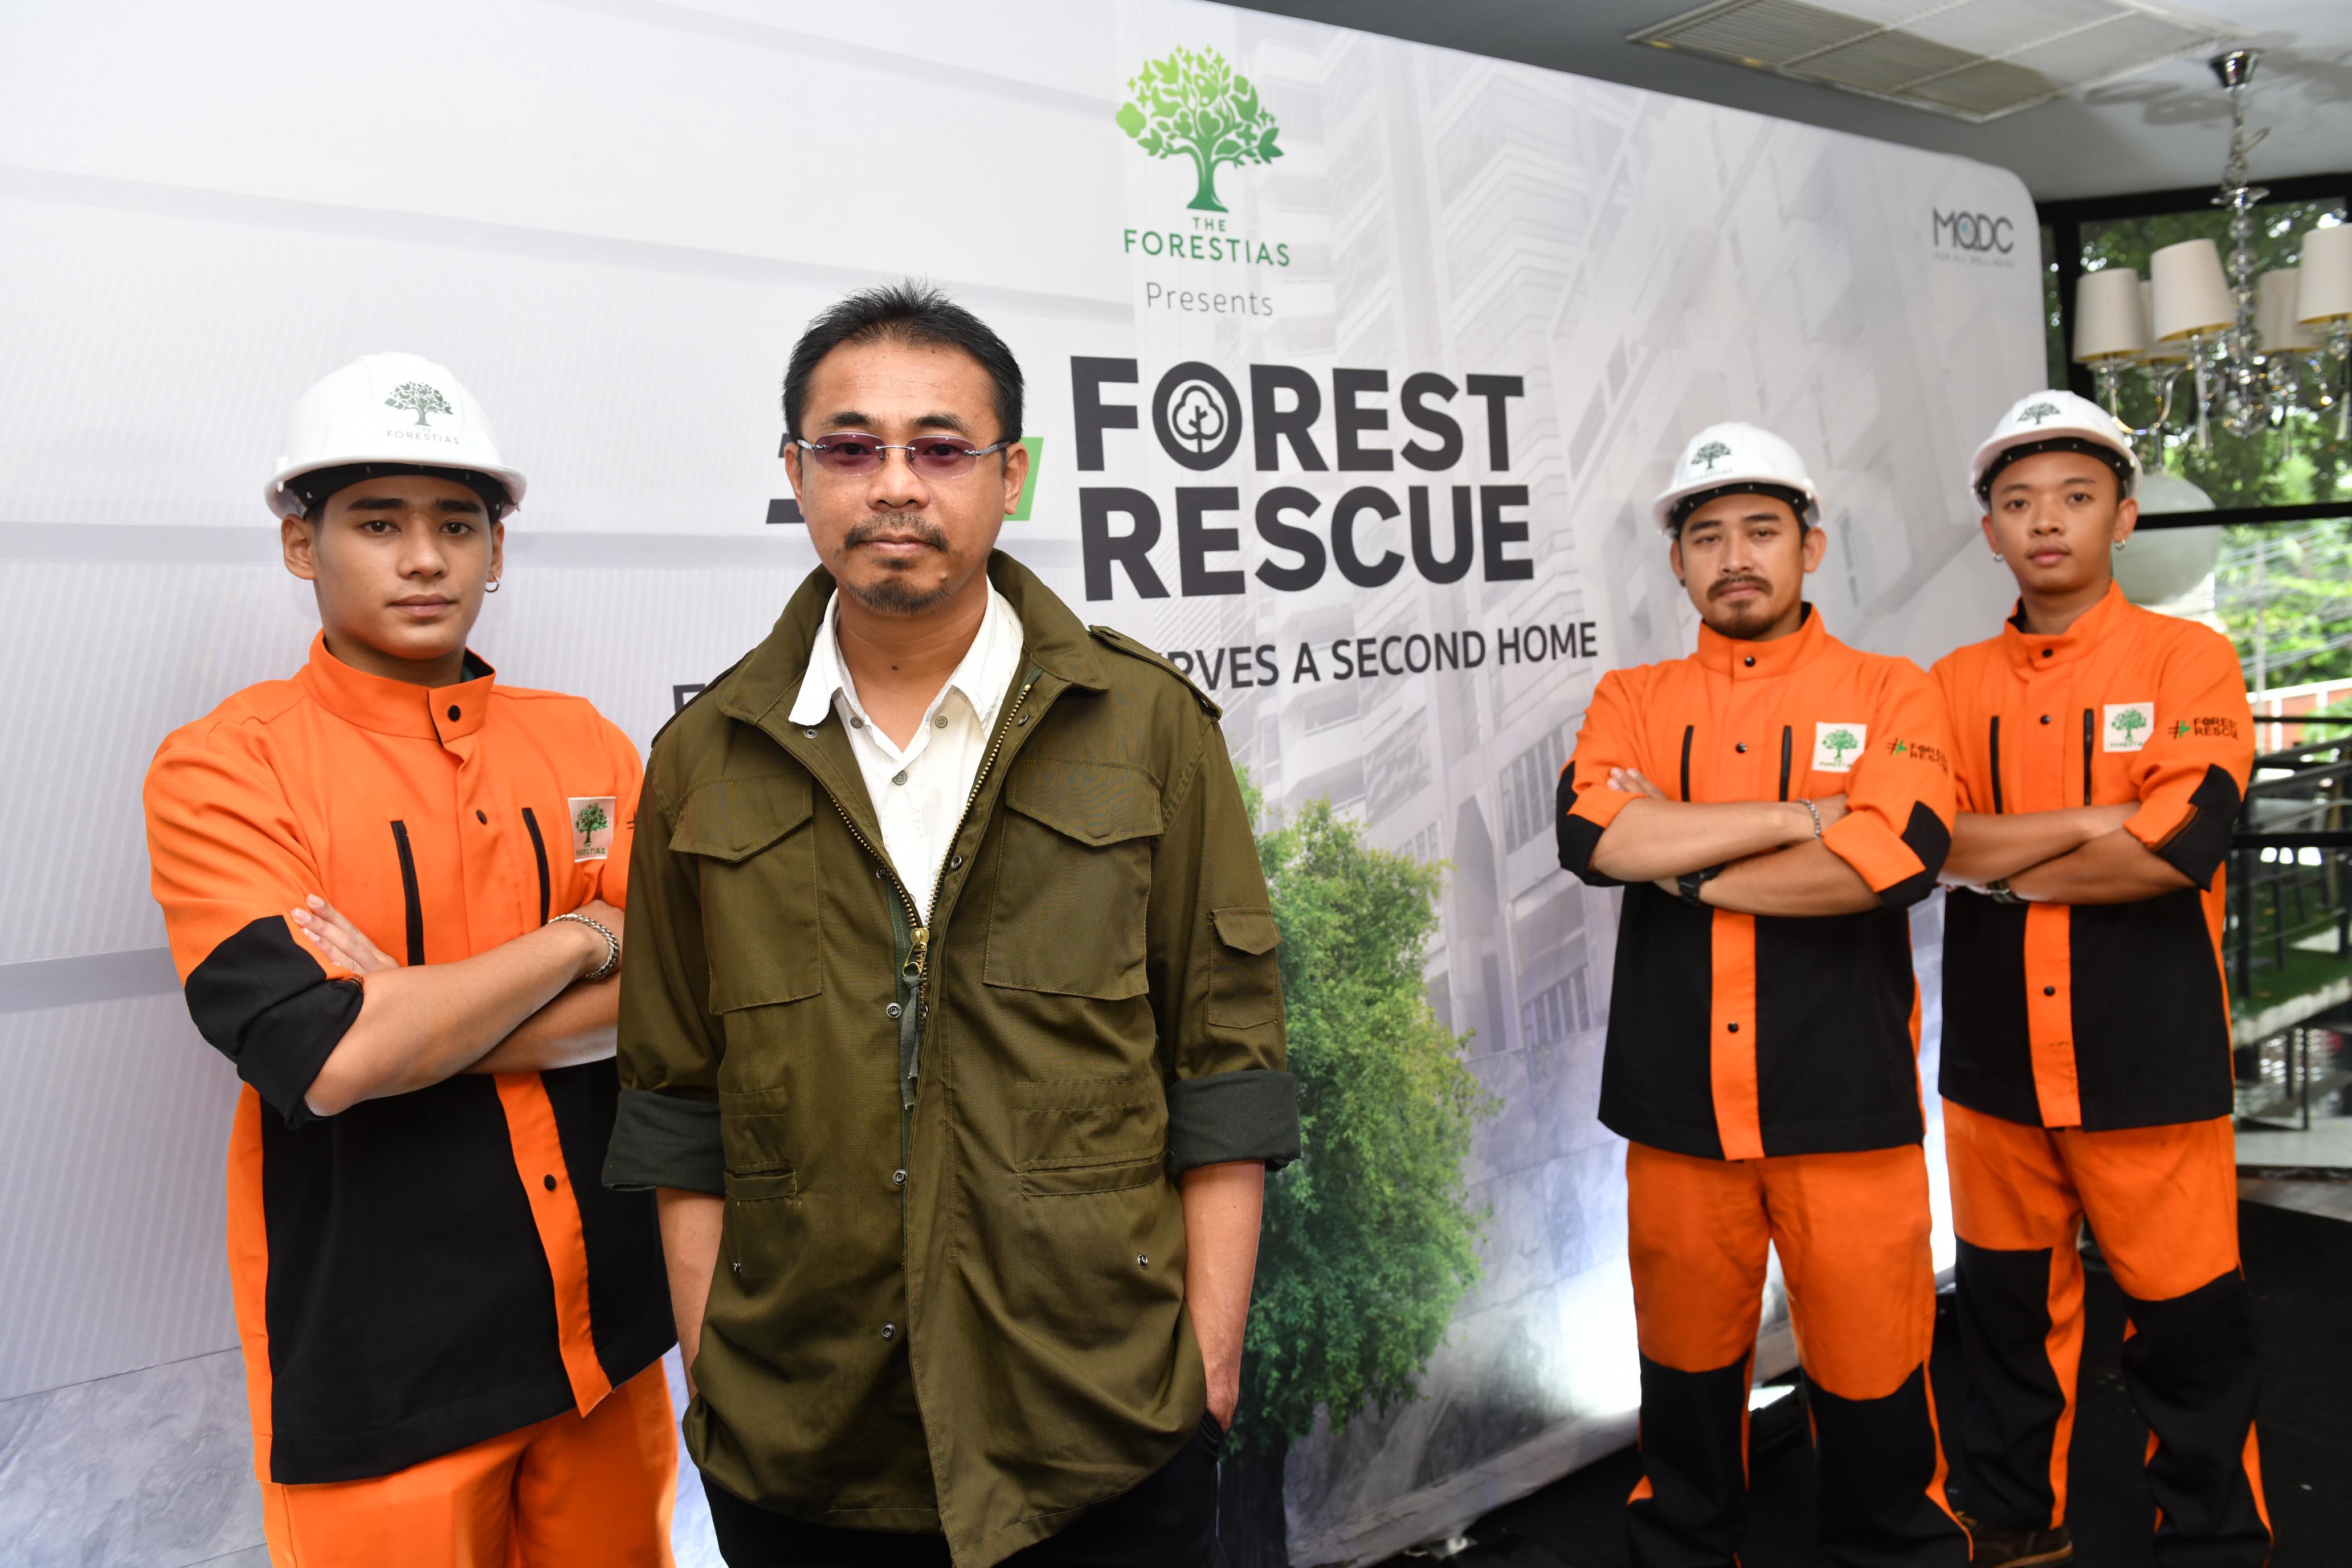 รูปบทความ The Forestias เปิดแคมเปญ "Forest Rescue" ปฏิบัติการกู้ชีพต้นไม่ถูกบุกรุกในเมือง